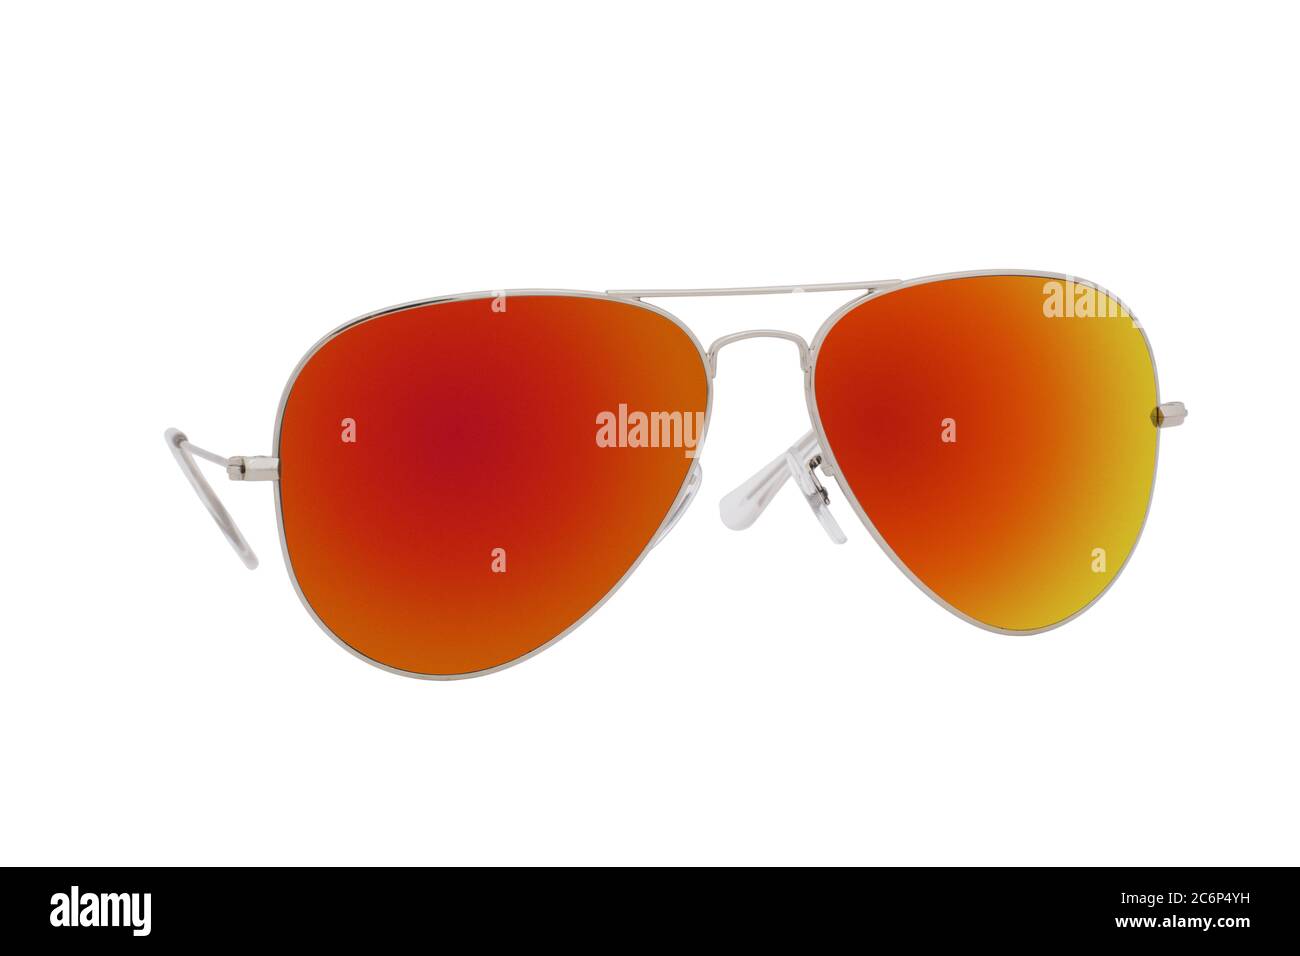 Gafas de sol con marco plateado y lentes rojas aisladas sobre fondo blanco Fotografía de stock Alamy